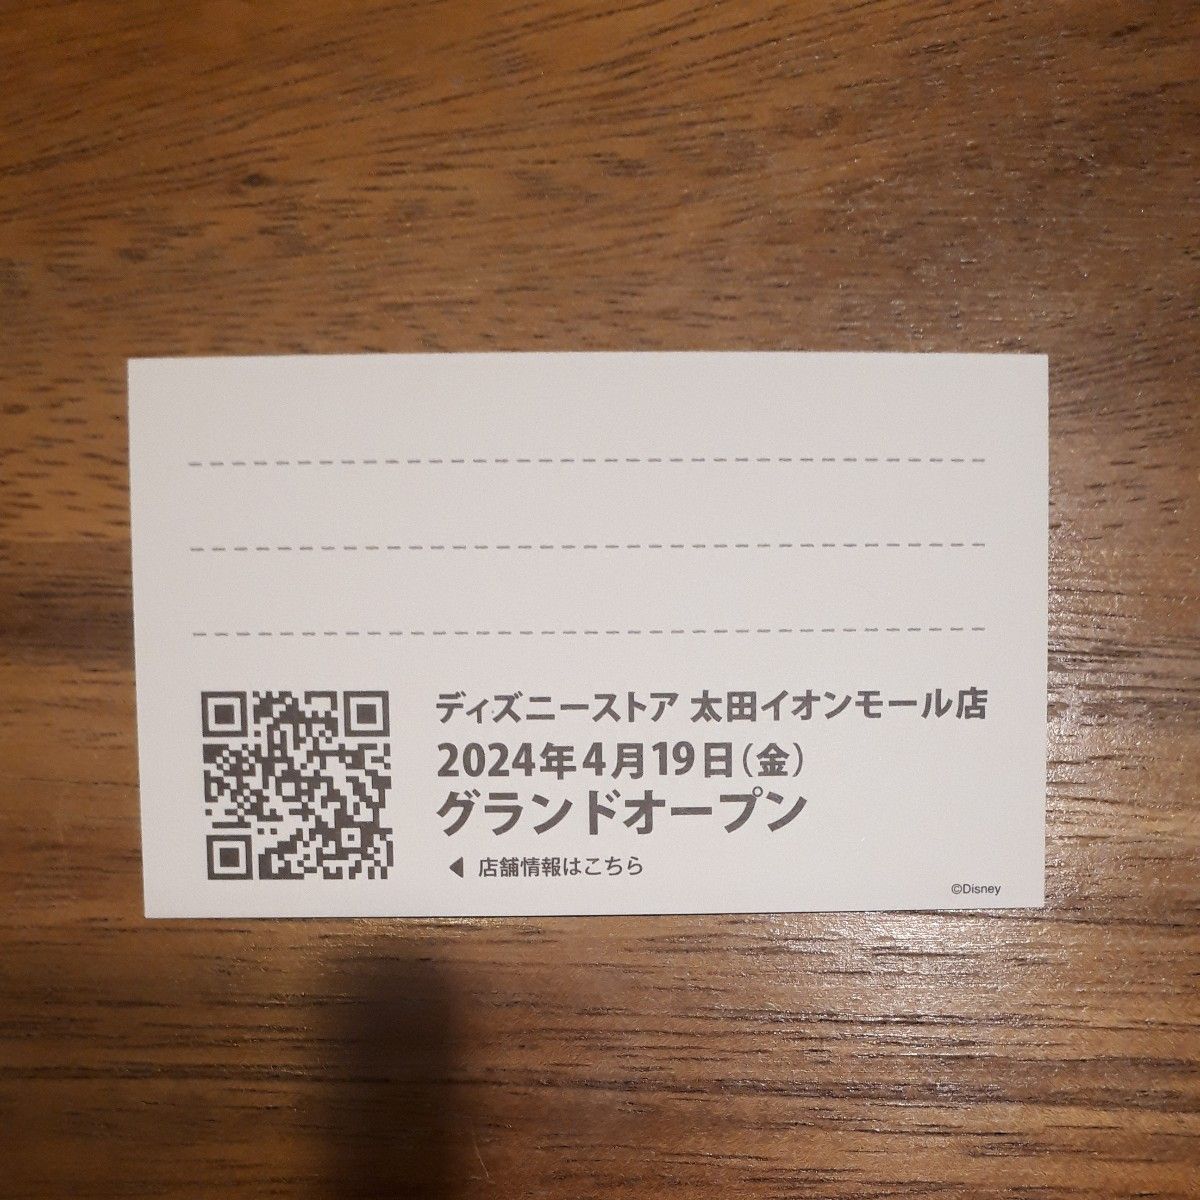 ディズニーストア 太田イオン店限定 オープン記念ショップカード 